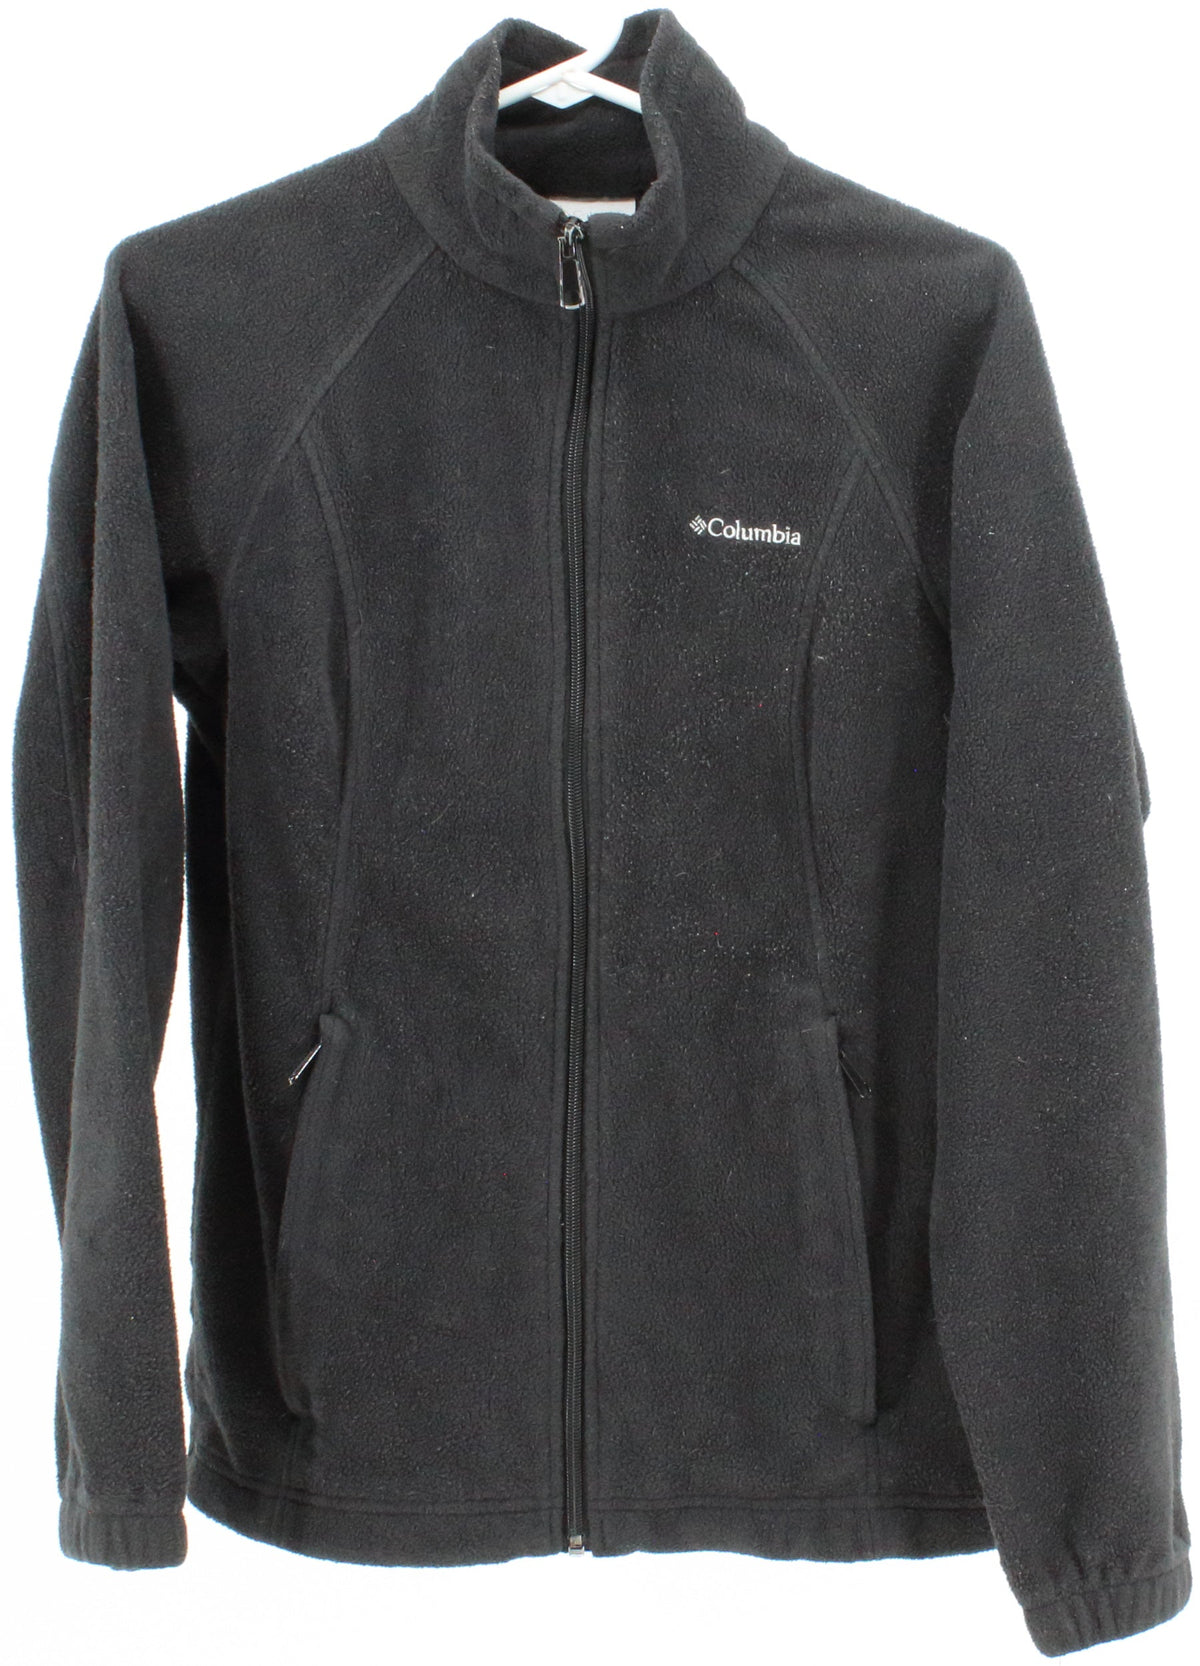 Columbia Black Full Zip Fleece Jacket